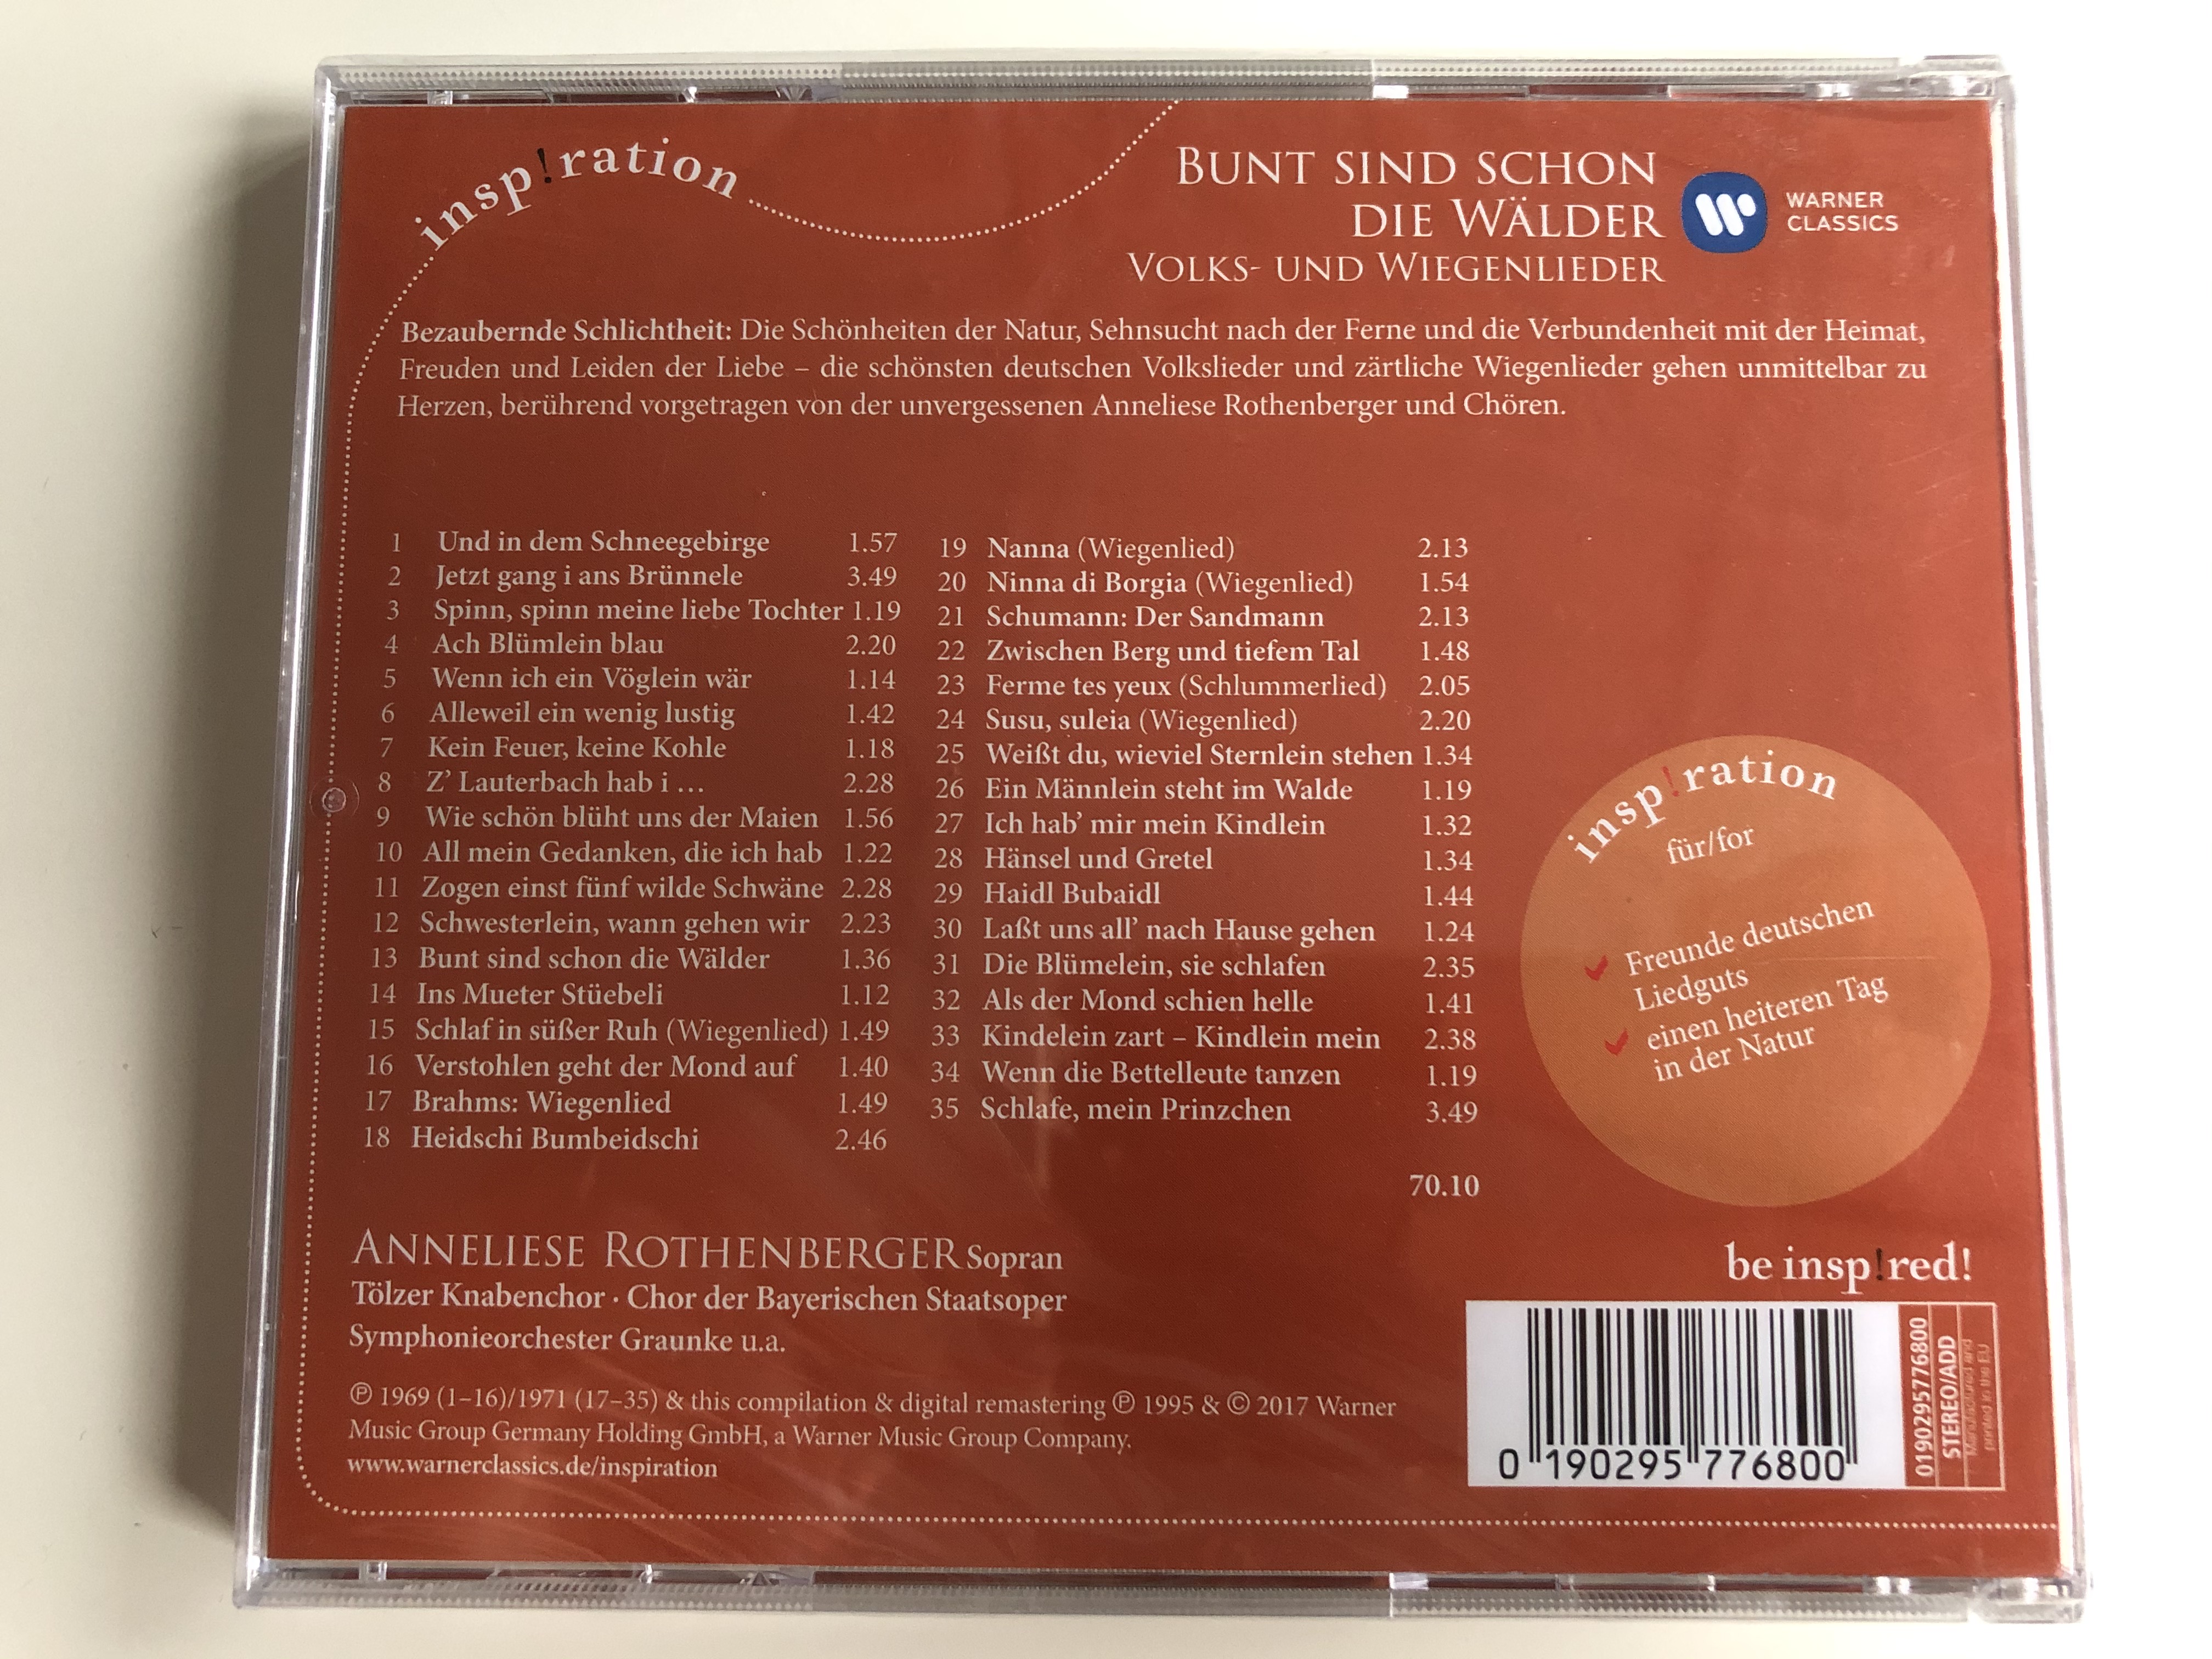 bunt-sind-schon-die-w-lder-volkslieder-wiegenlieder-rothenberger-t-lzer-knabenchor-warner-classics-audio-cd-2017-0190295776800-2-.jpg